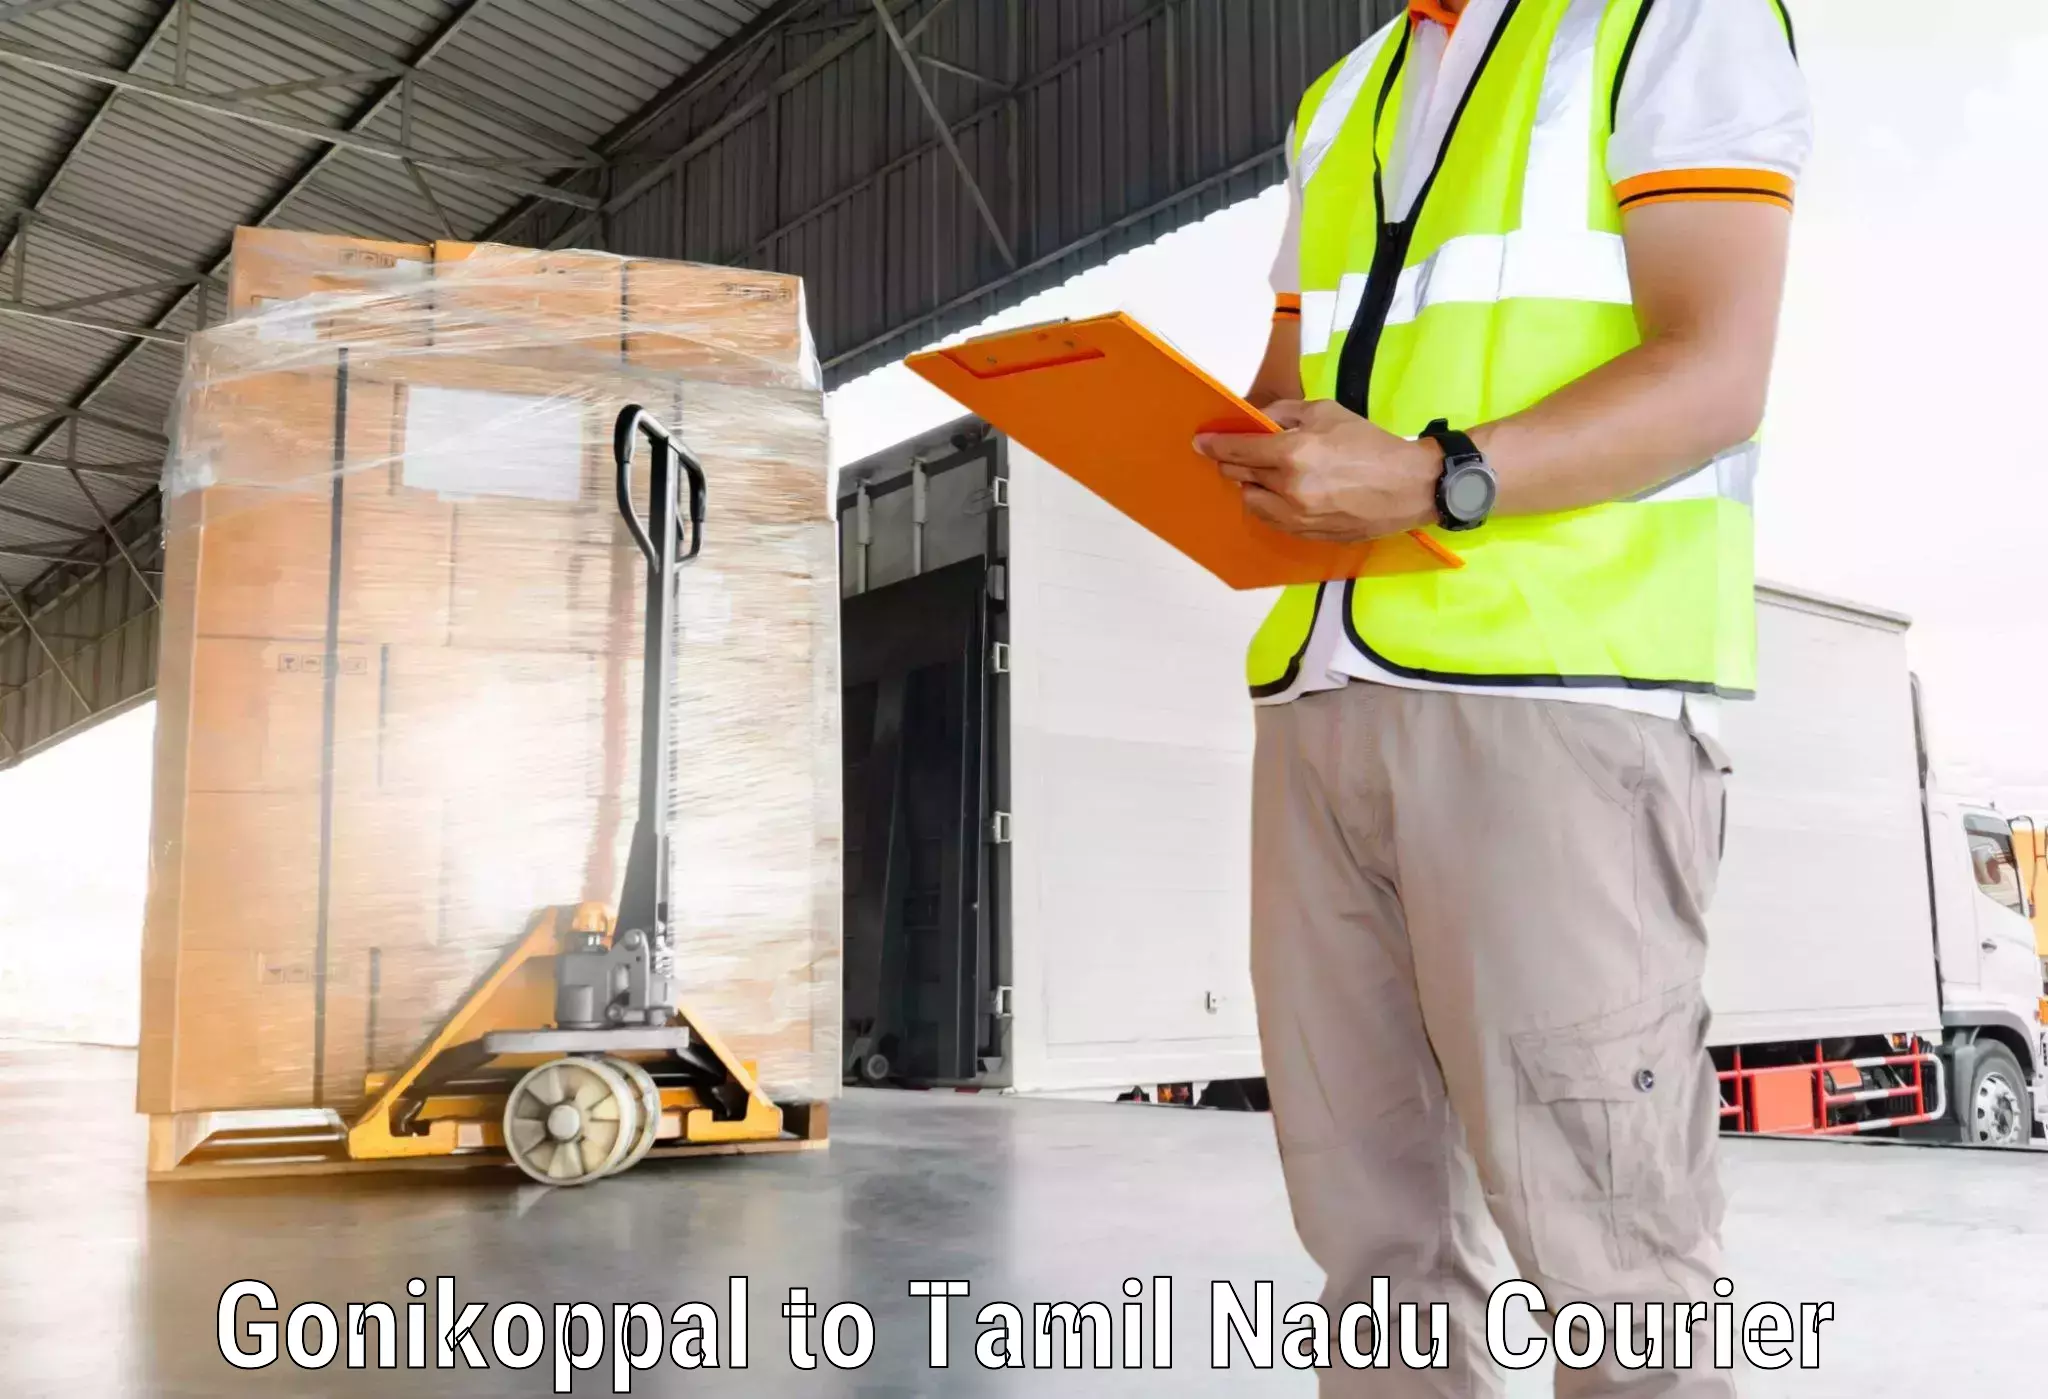 Express delivery network Gonikoppal to Tiruturaipundi